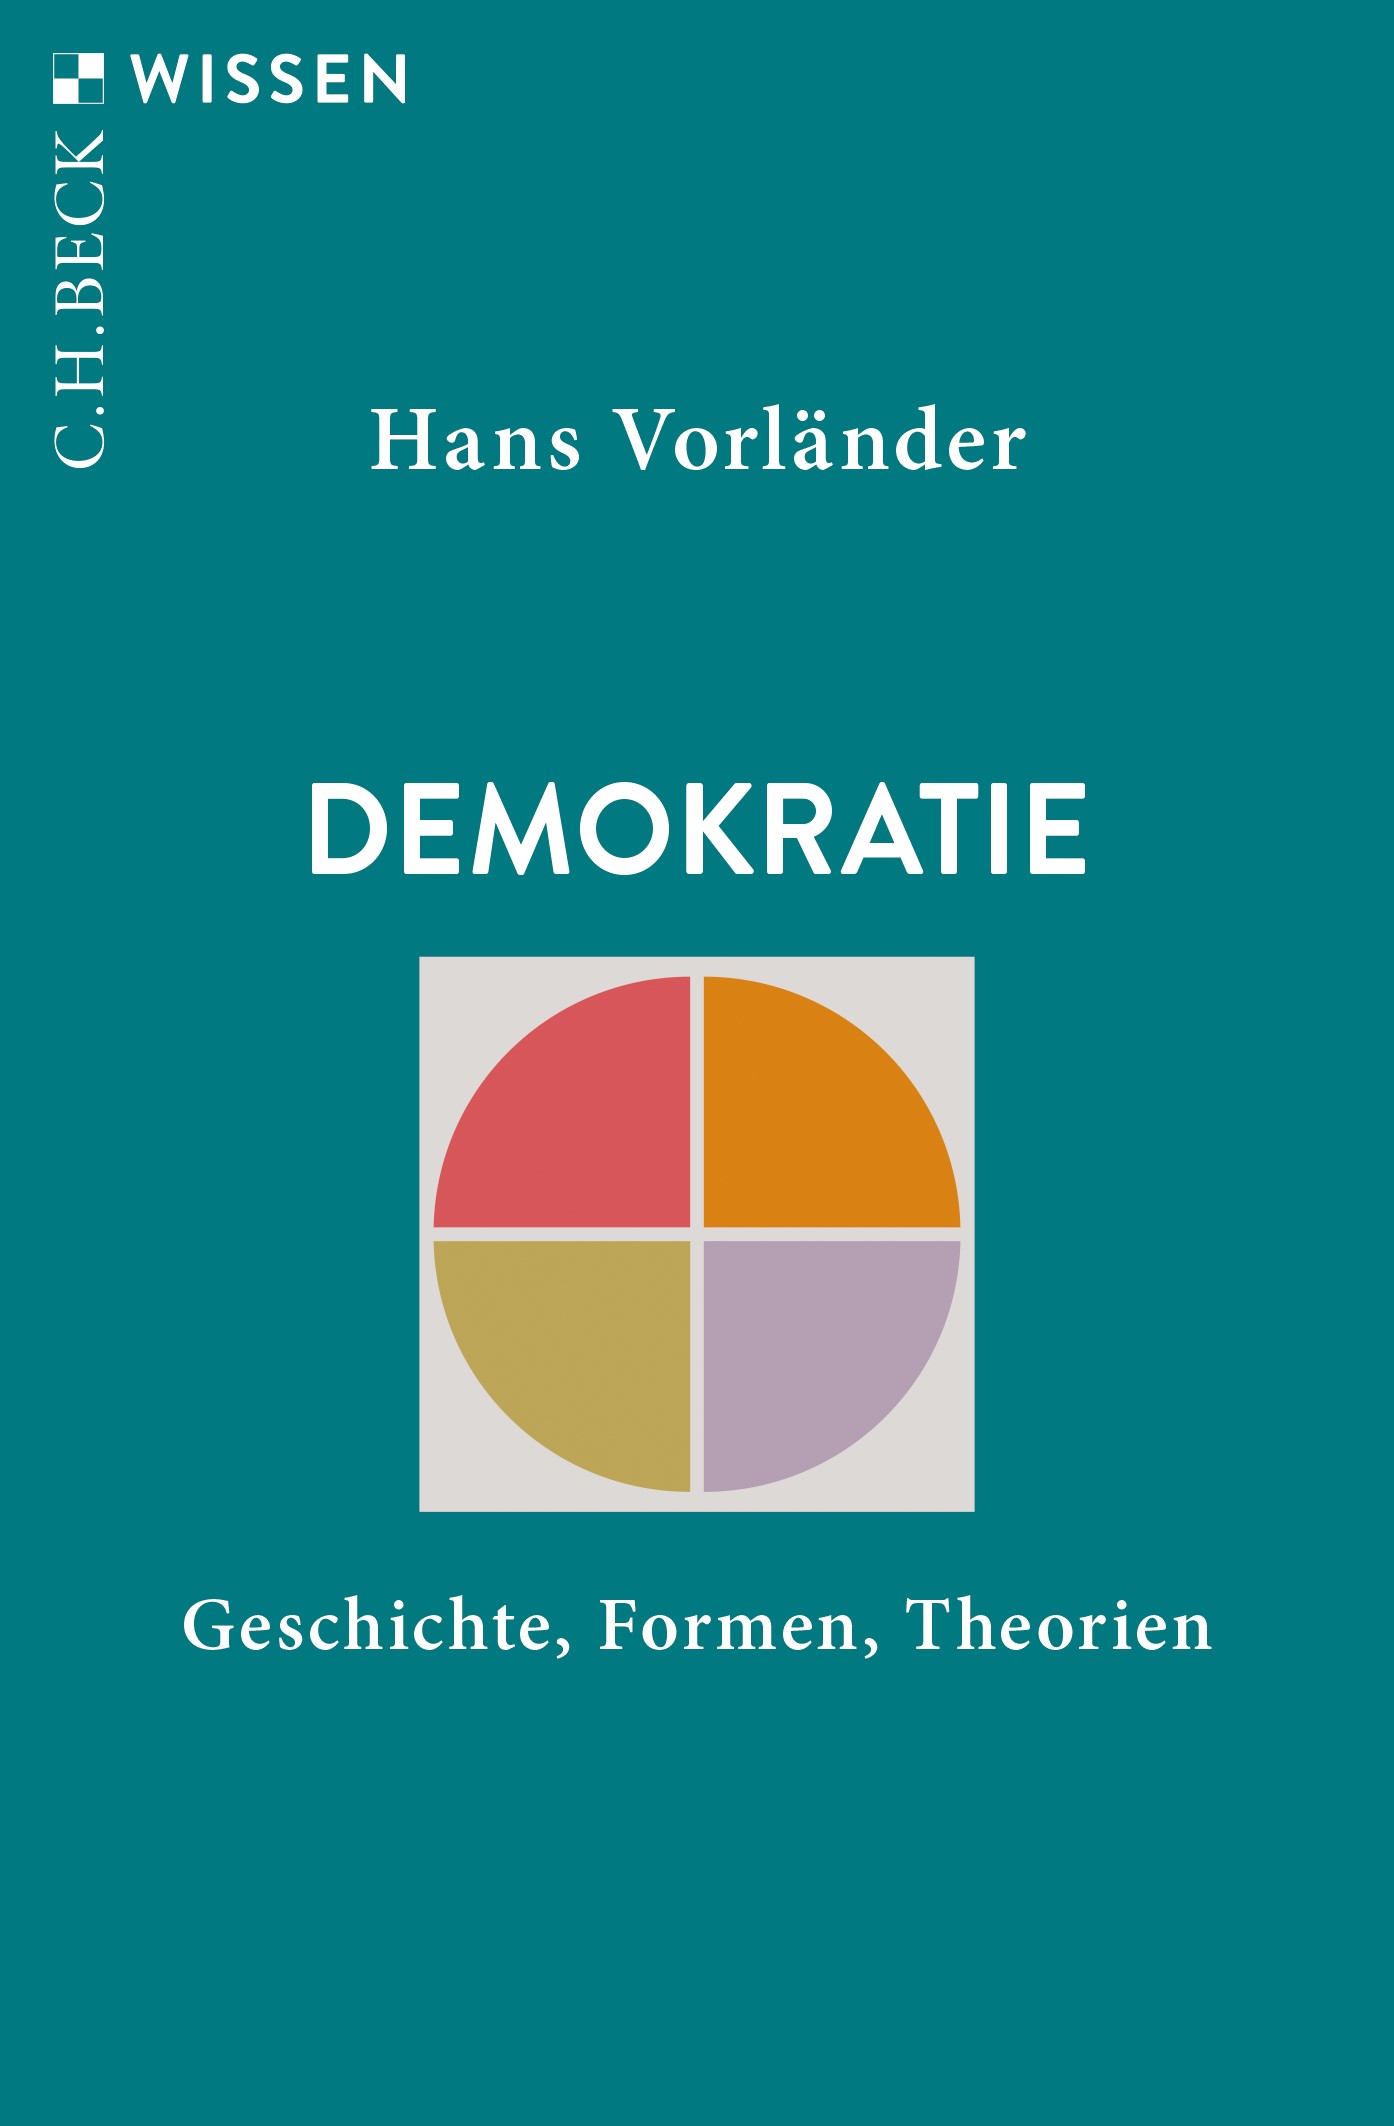 Cover: Vorländer, Hans, Demokratie